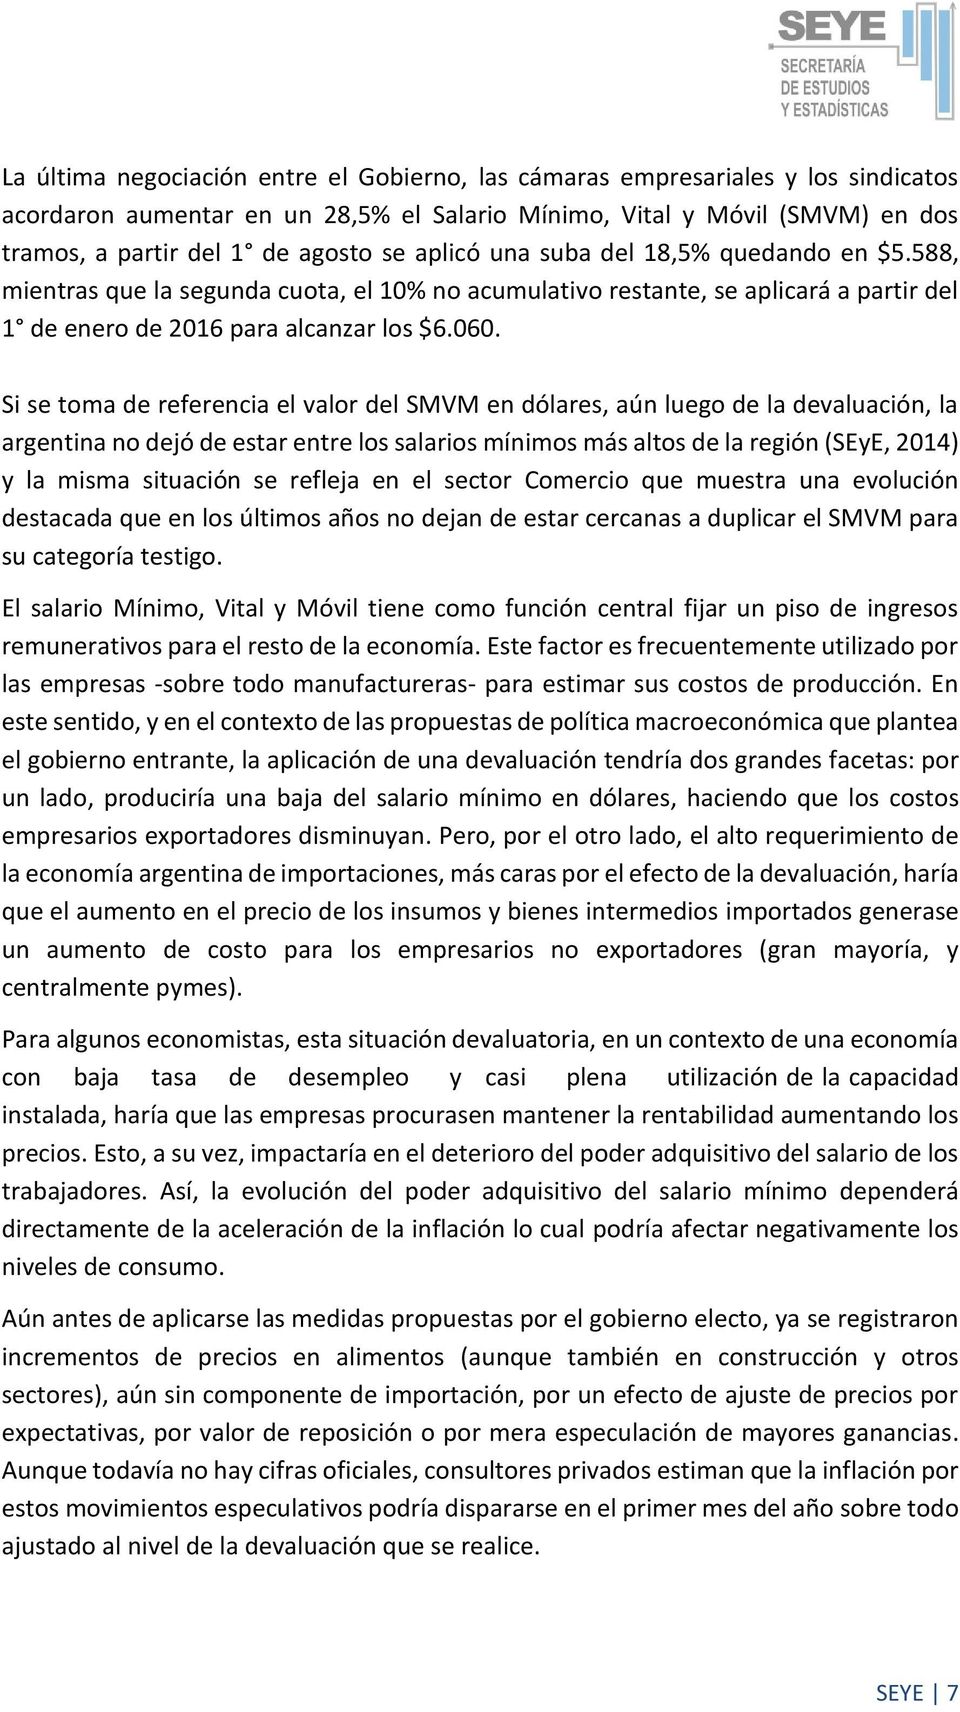 Si se toma de referencia el valor del SMVM en dólares, aún luego de la devaluación, la argentina no dejó de estar entre los salarios mínimos más altos de la región (SEyE, 2014) y la misma situación